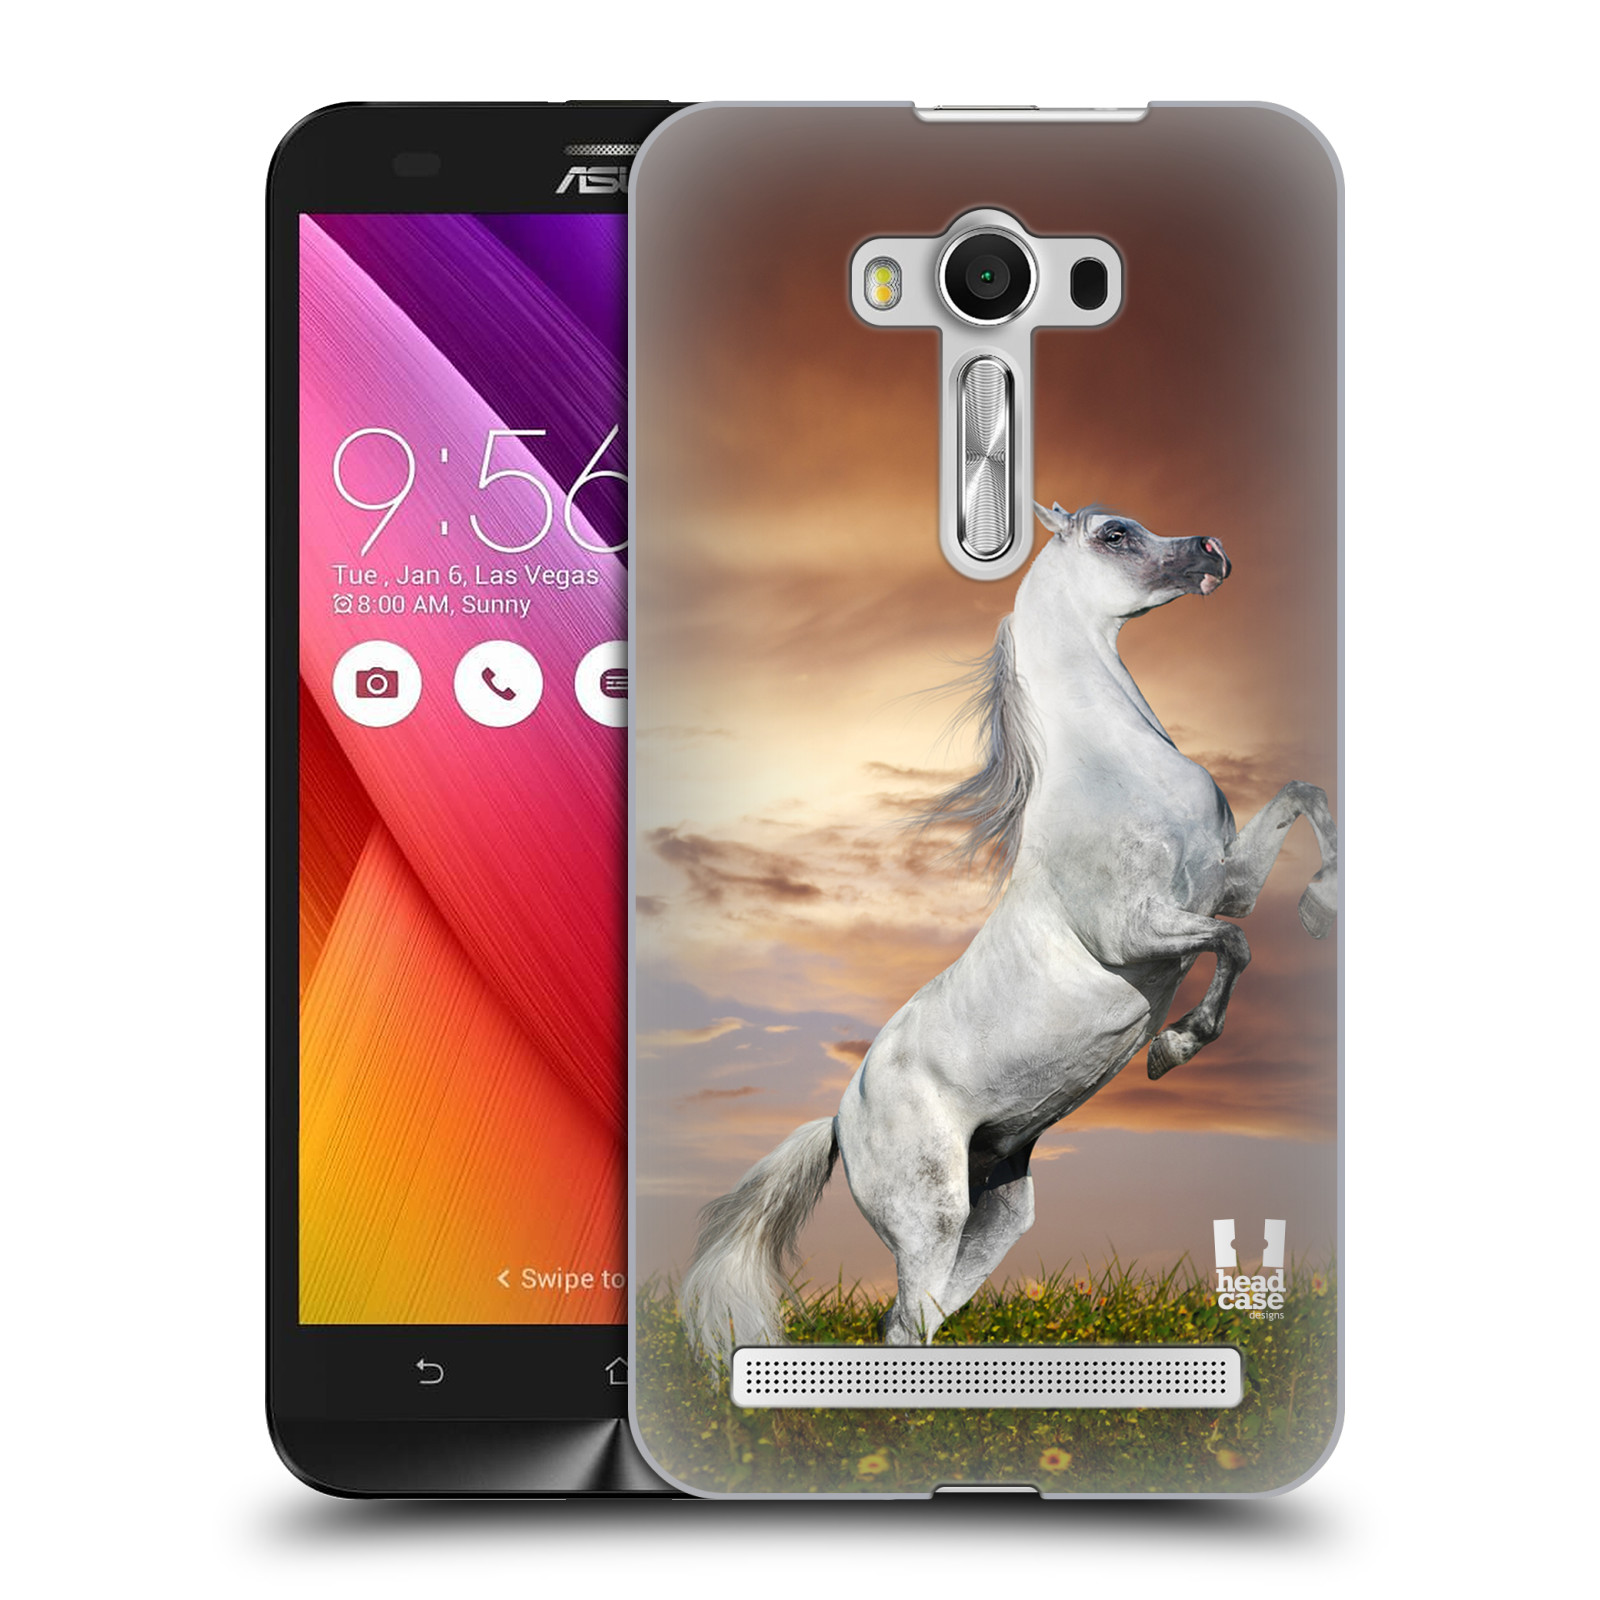 HEAD CASE plastový obal na mobil Asus Zenfone 2 LASER (5,5 displej ZE550KL) vzor Divočina, Divoký život a zvířata foto DIVOKÝ KŮŇ MUSTANG BÍLÁ